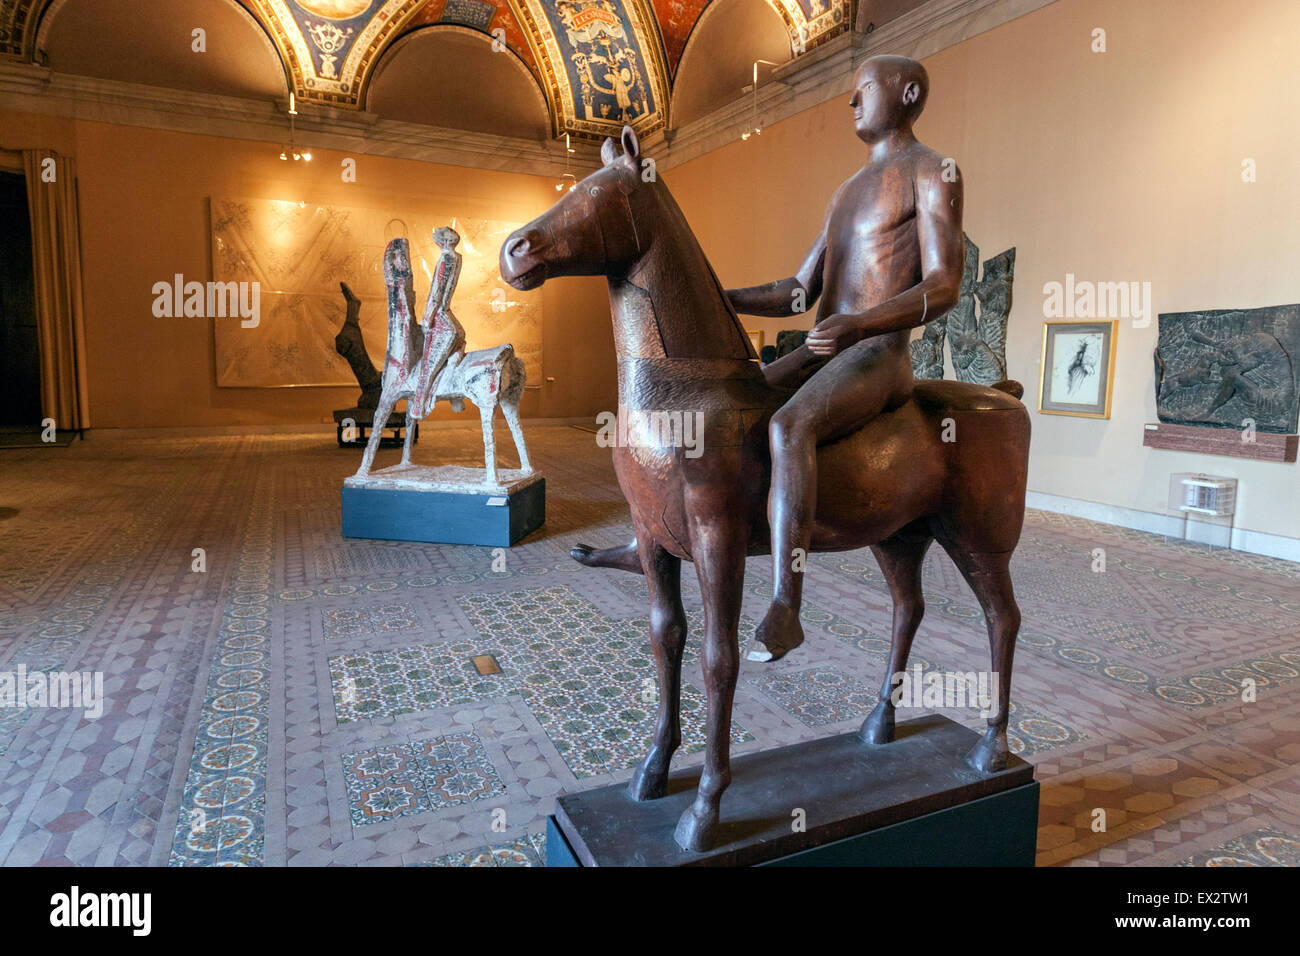 El caballo y el muchacho la escultura en la Colección de Arte Religioso Moderno de los Museos Vaticanos Foto de stock